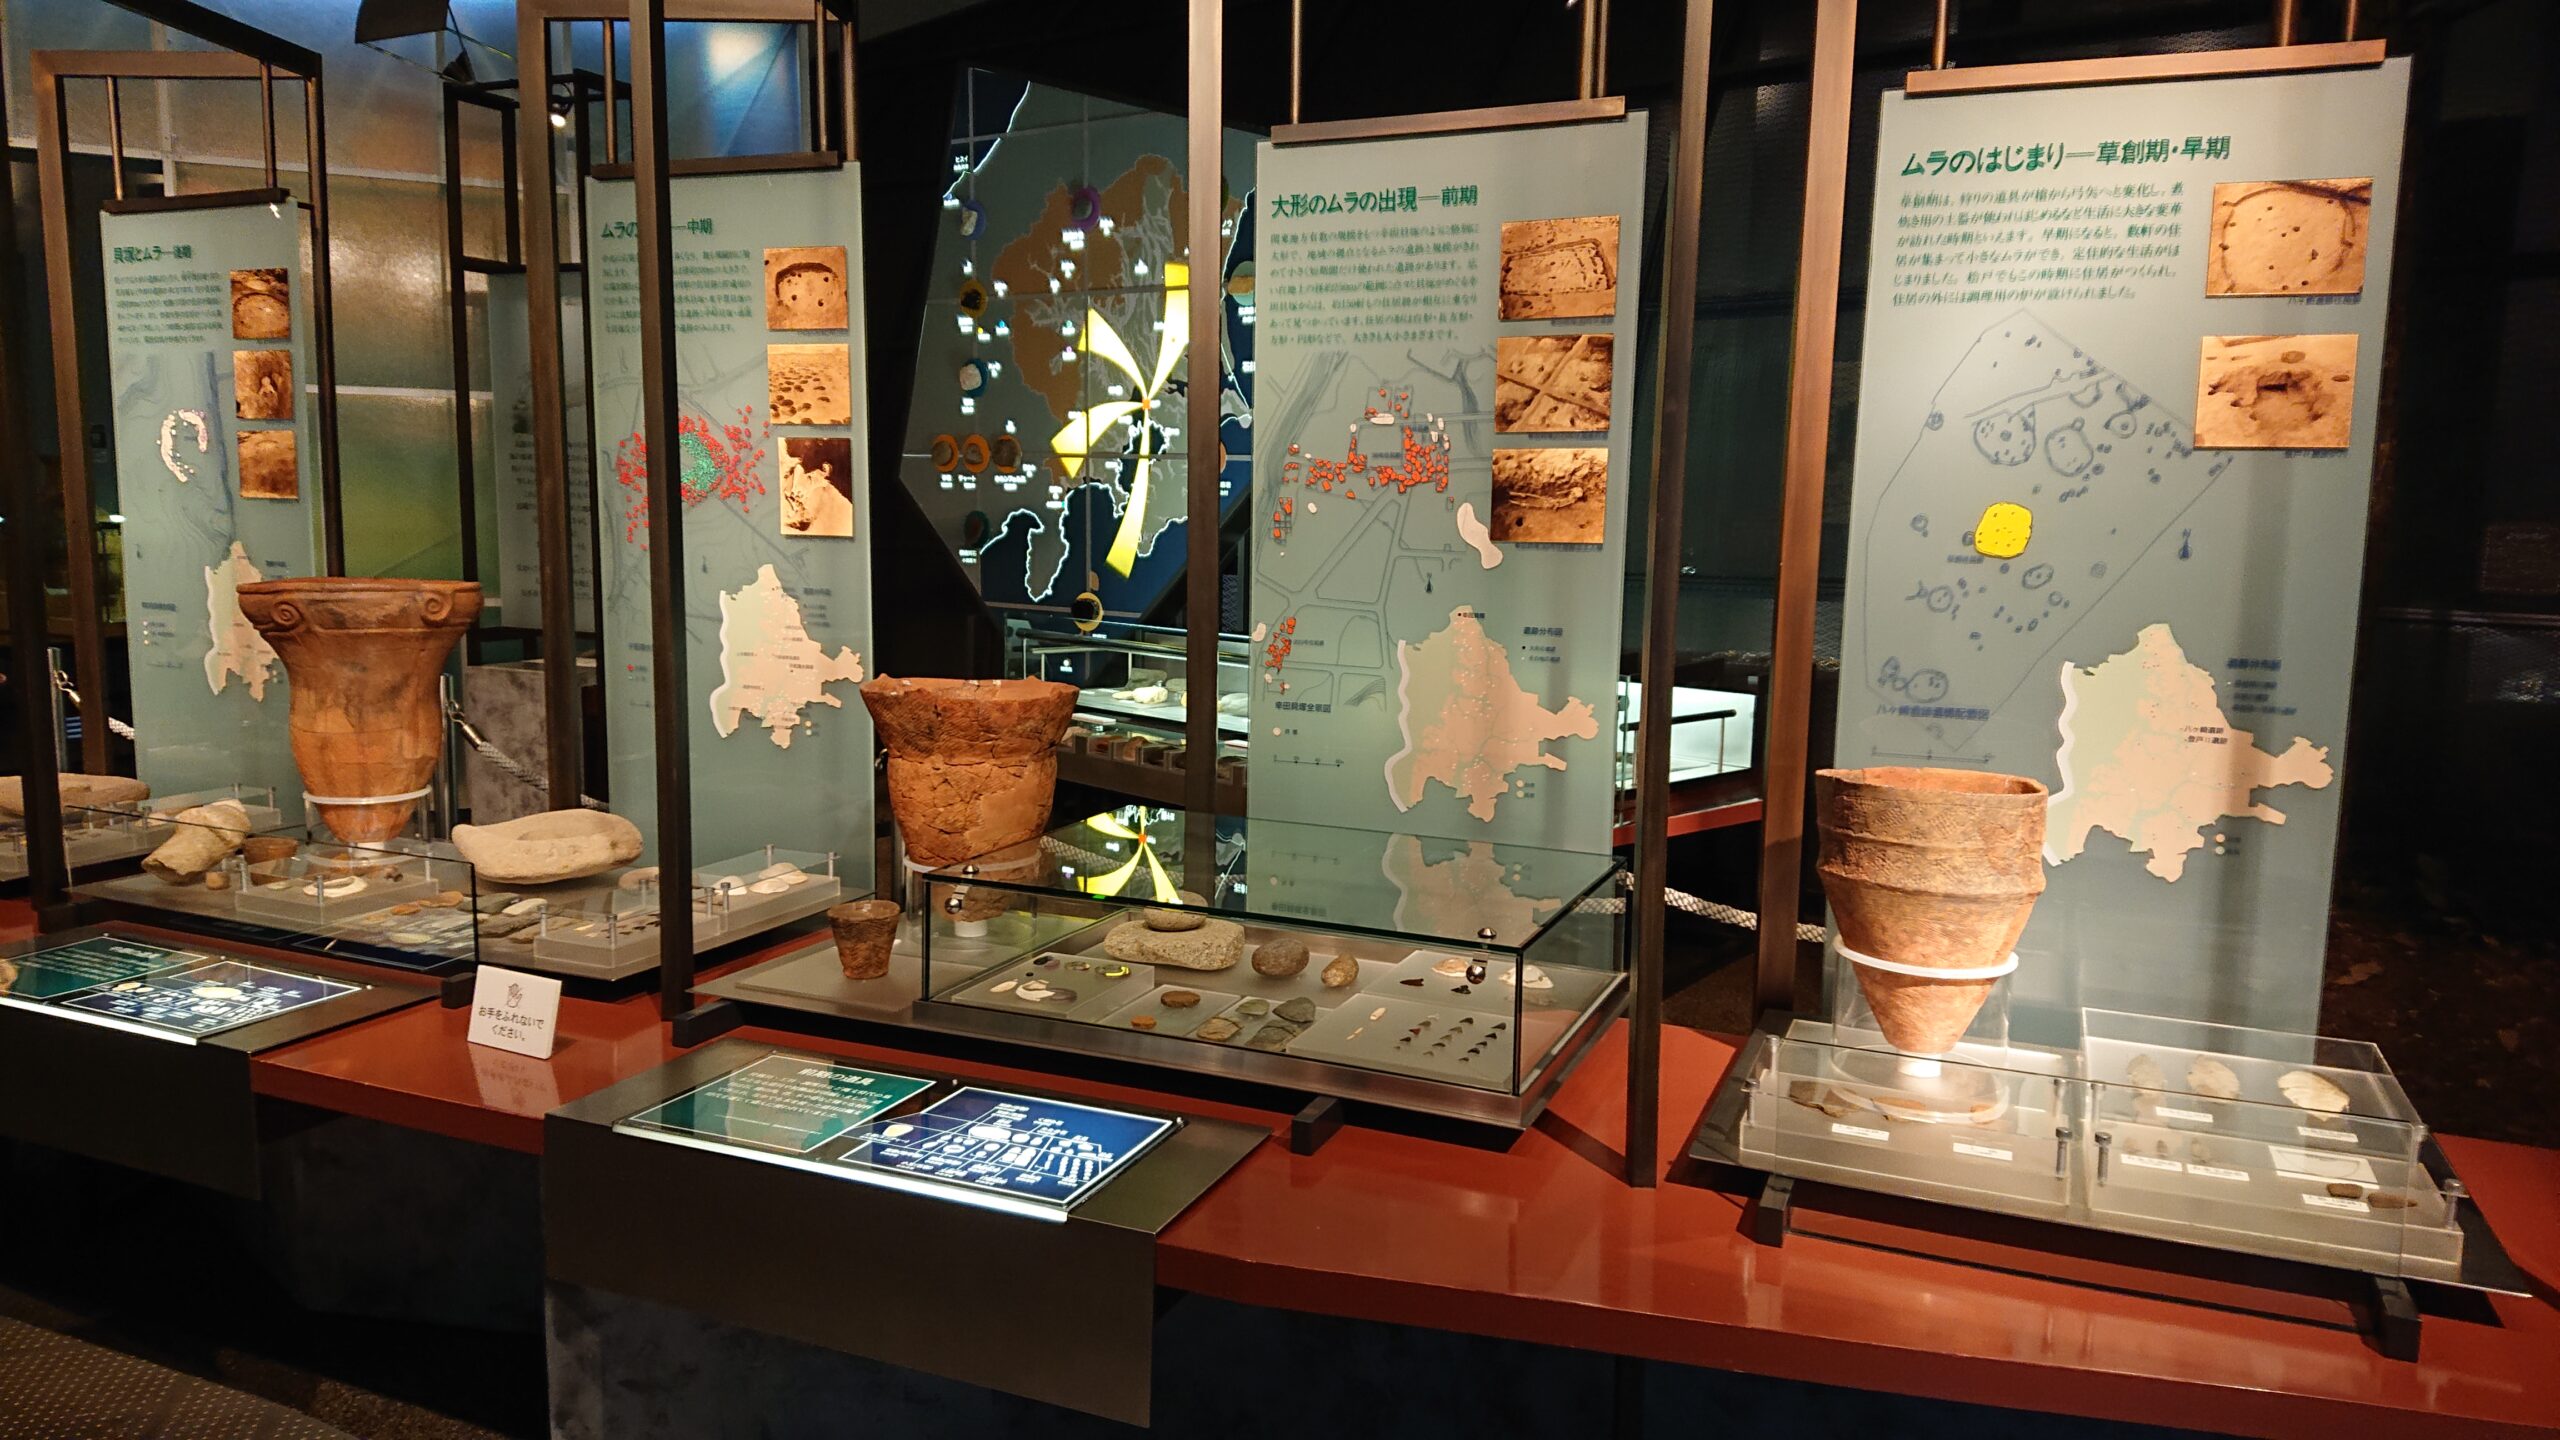 松戸市立博物館の土器の展示